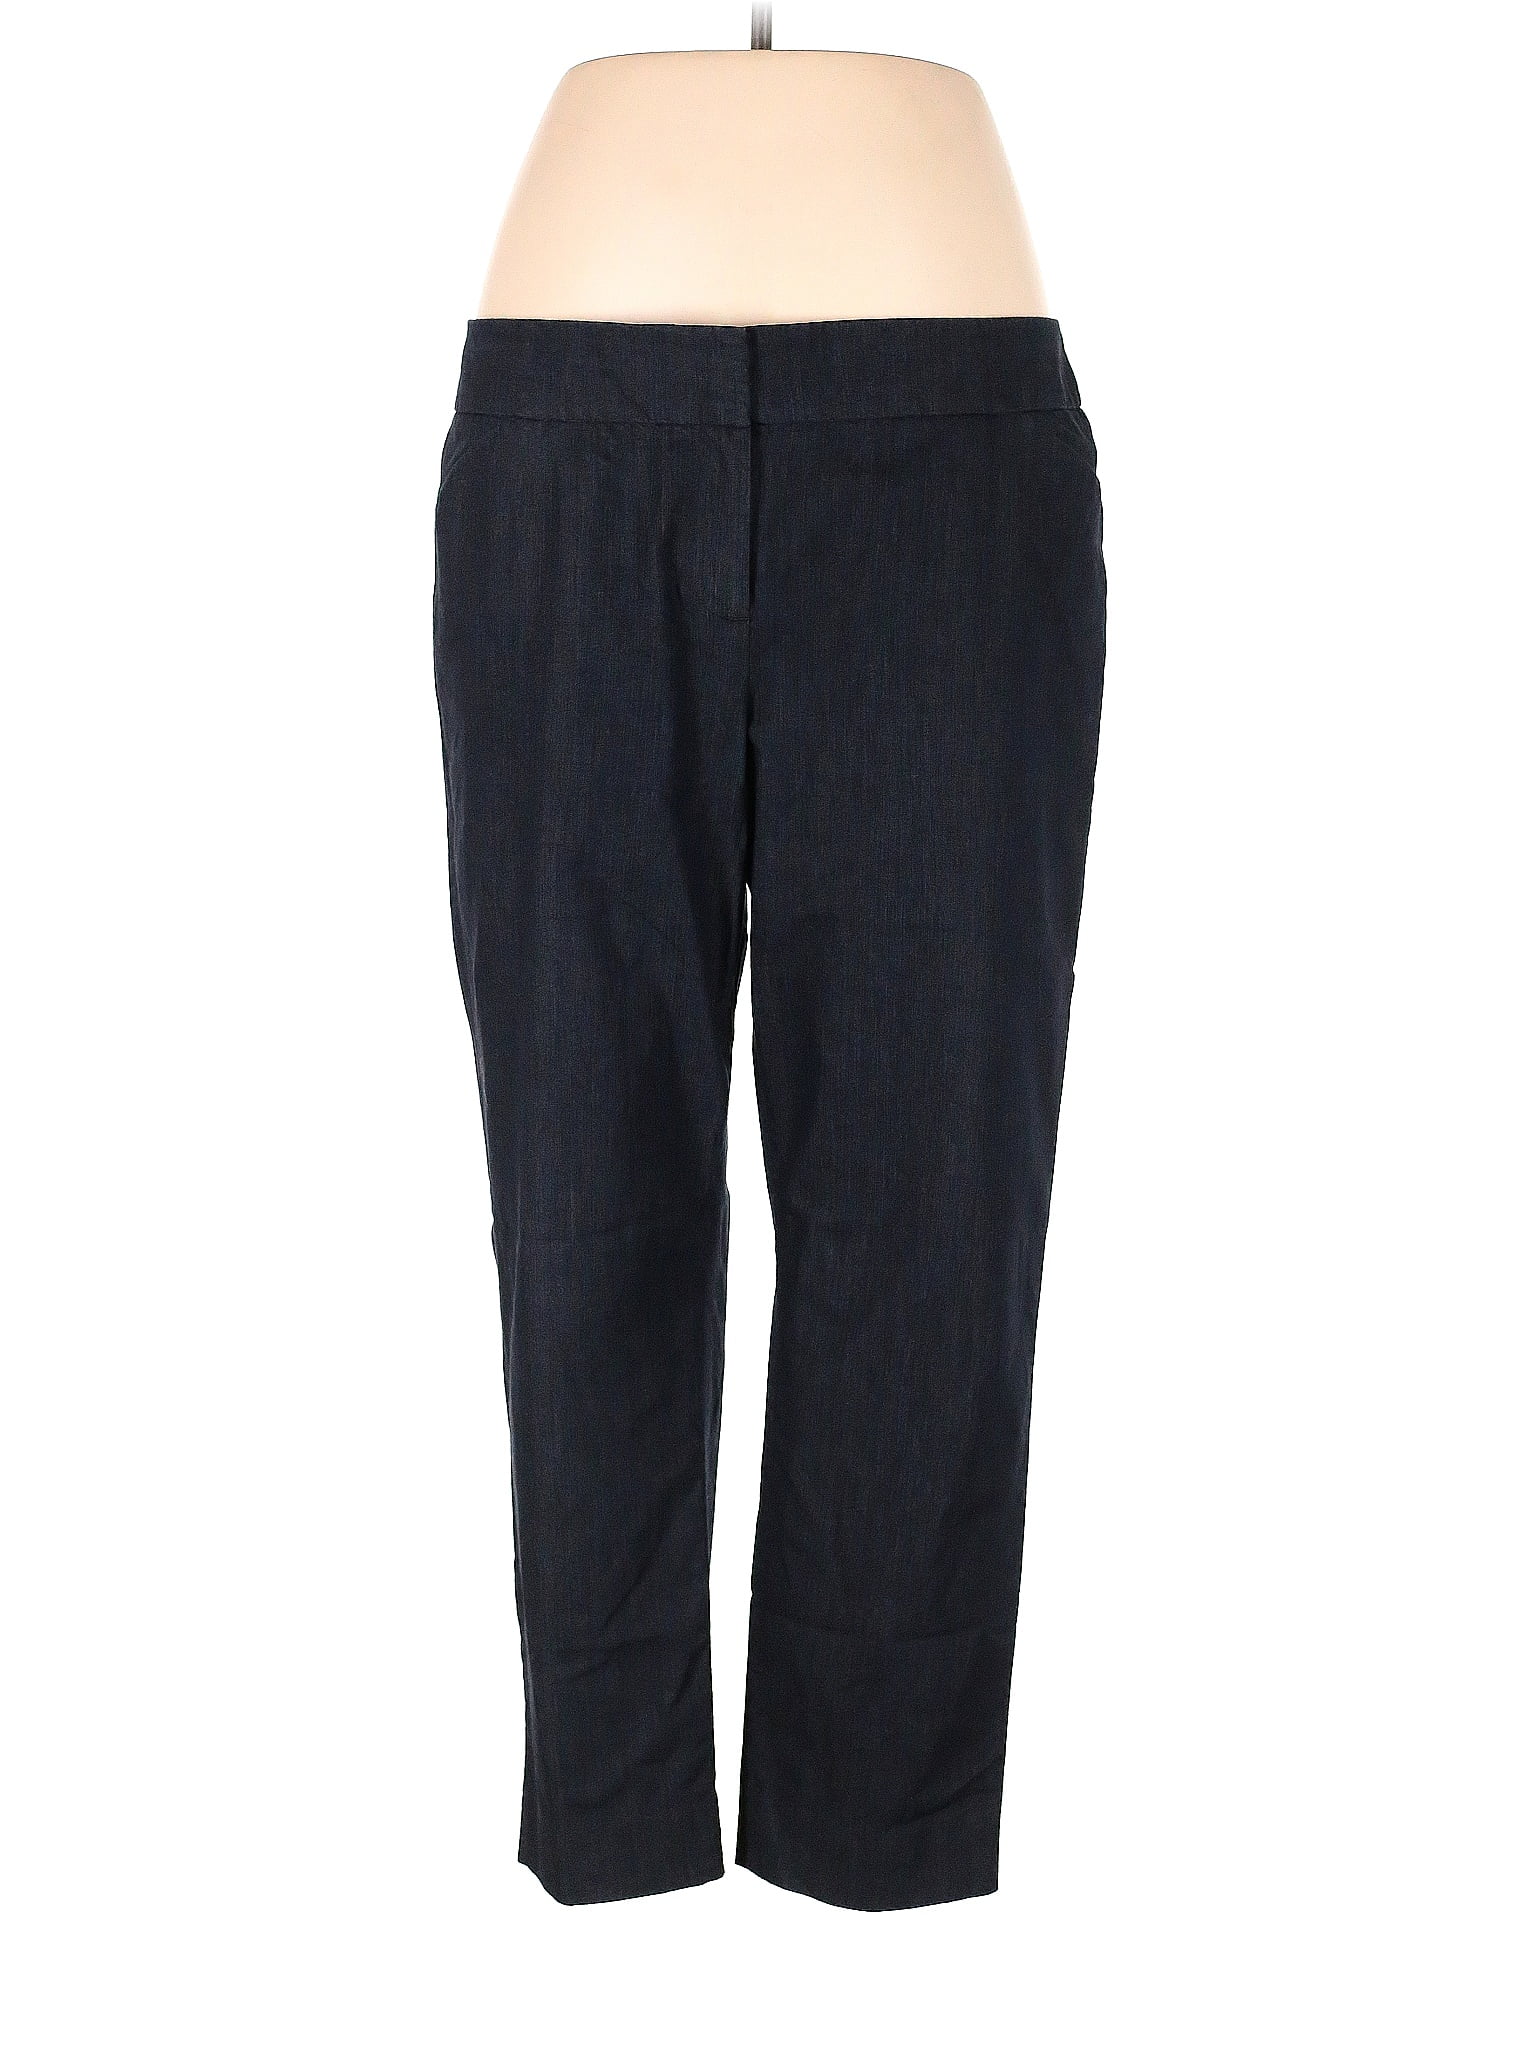 Soft Surroundings Solid Black Linen Pants Size M (Petite) - 70